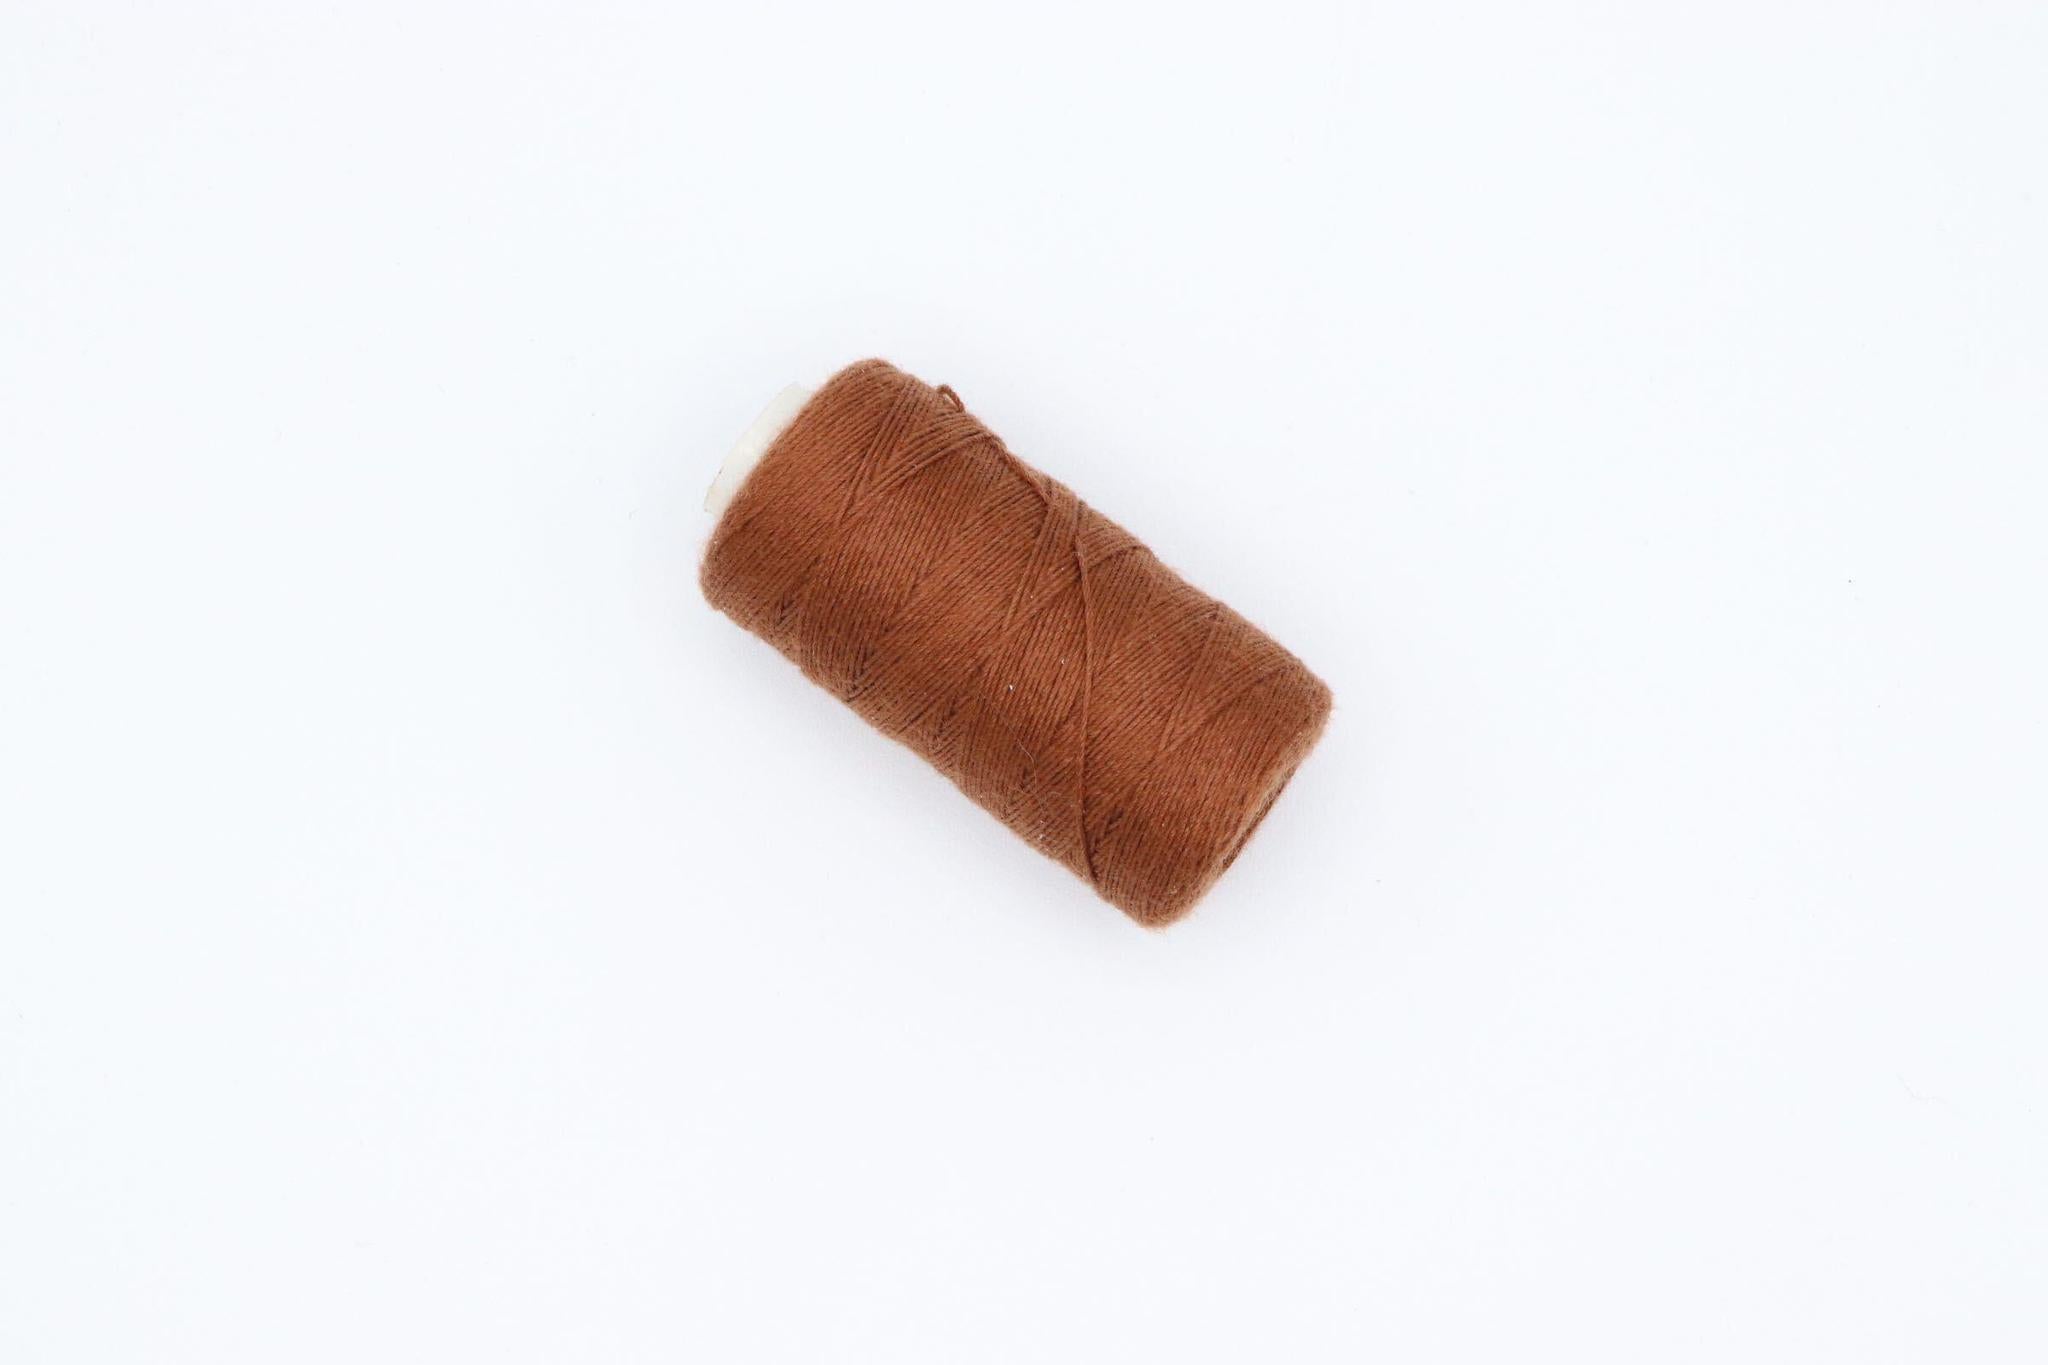 Laced Hair Mini Weaving Thread